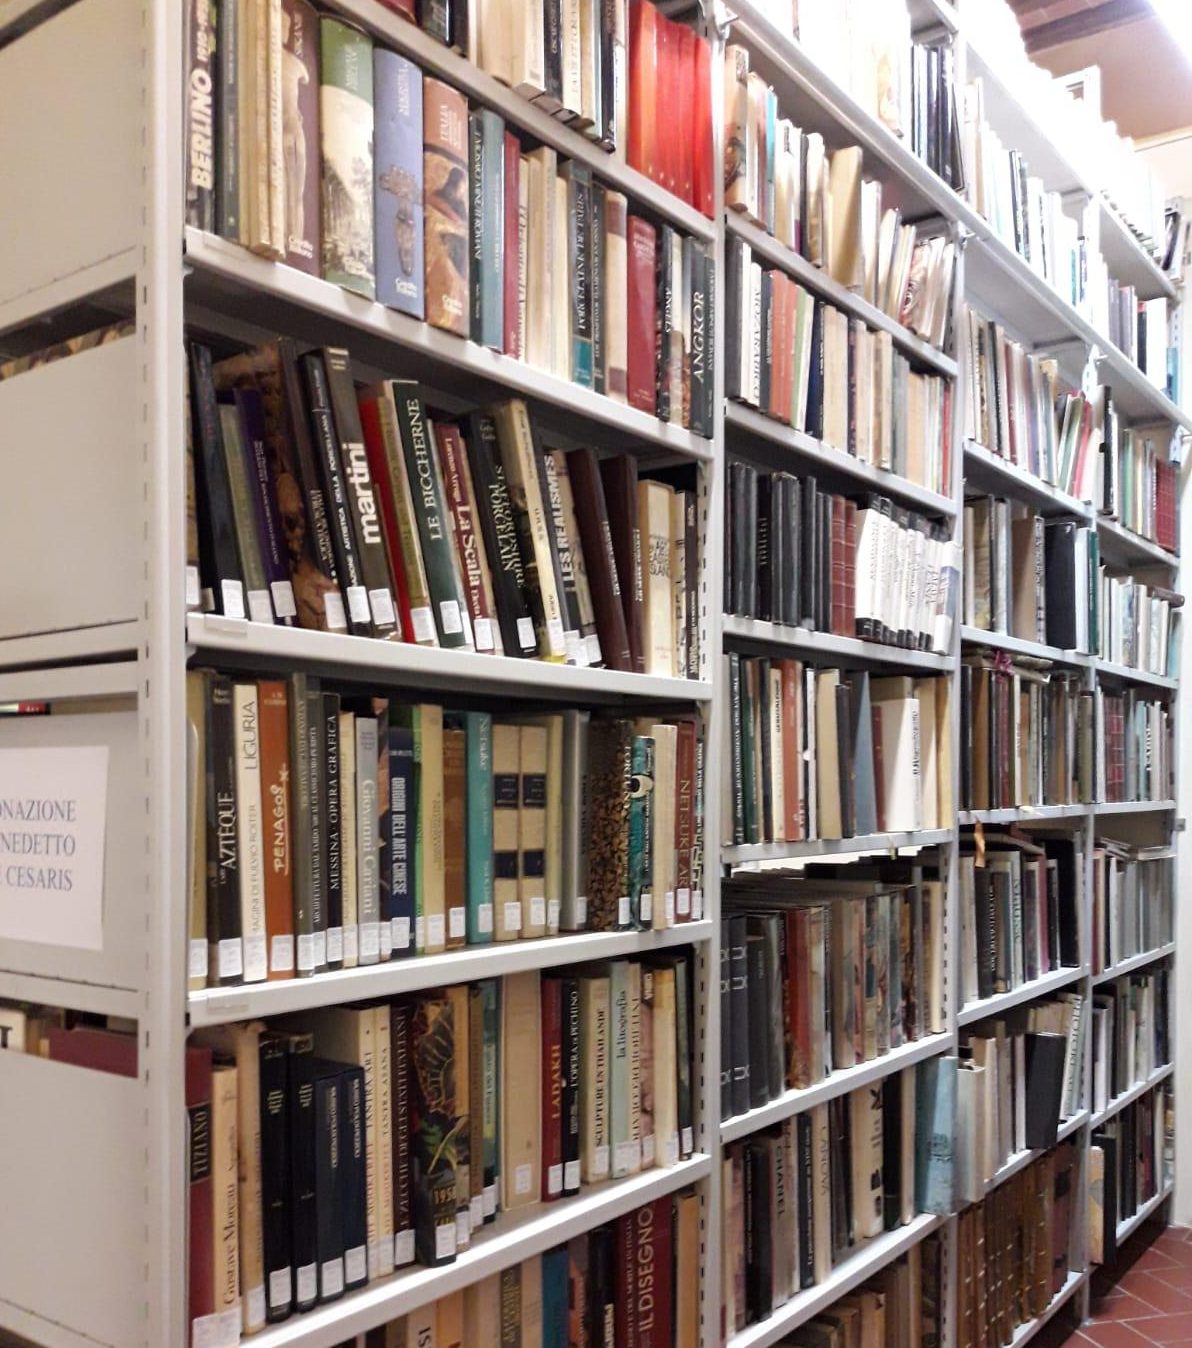 La Biblioteca di Castiglion Fiorentino ha ottenuto un finanziamento di 10000 euro, dichiarando un patrimonio librario pari a 58273 volumi, di cui 21000 riferibili alla collezione antica e la restante parte alla sezione moderna